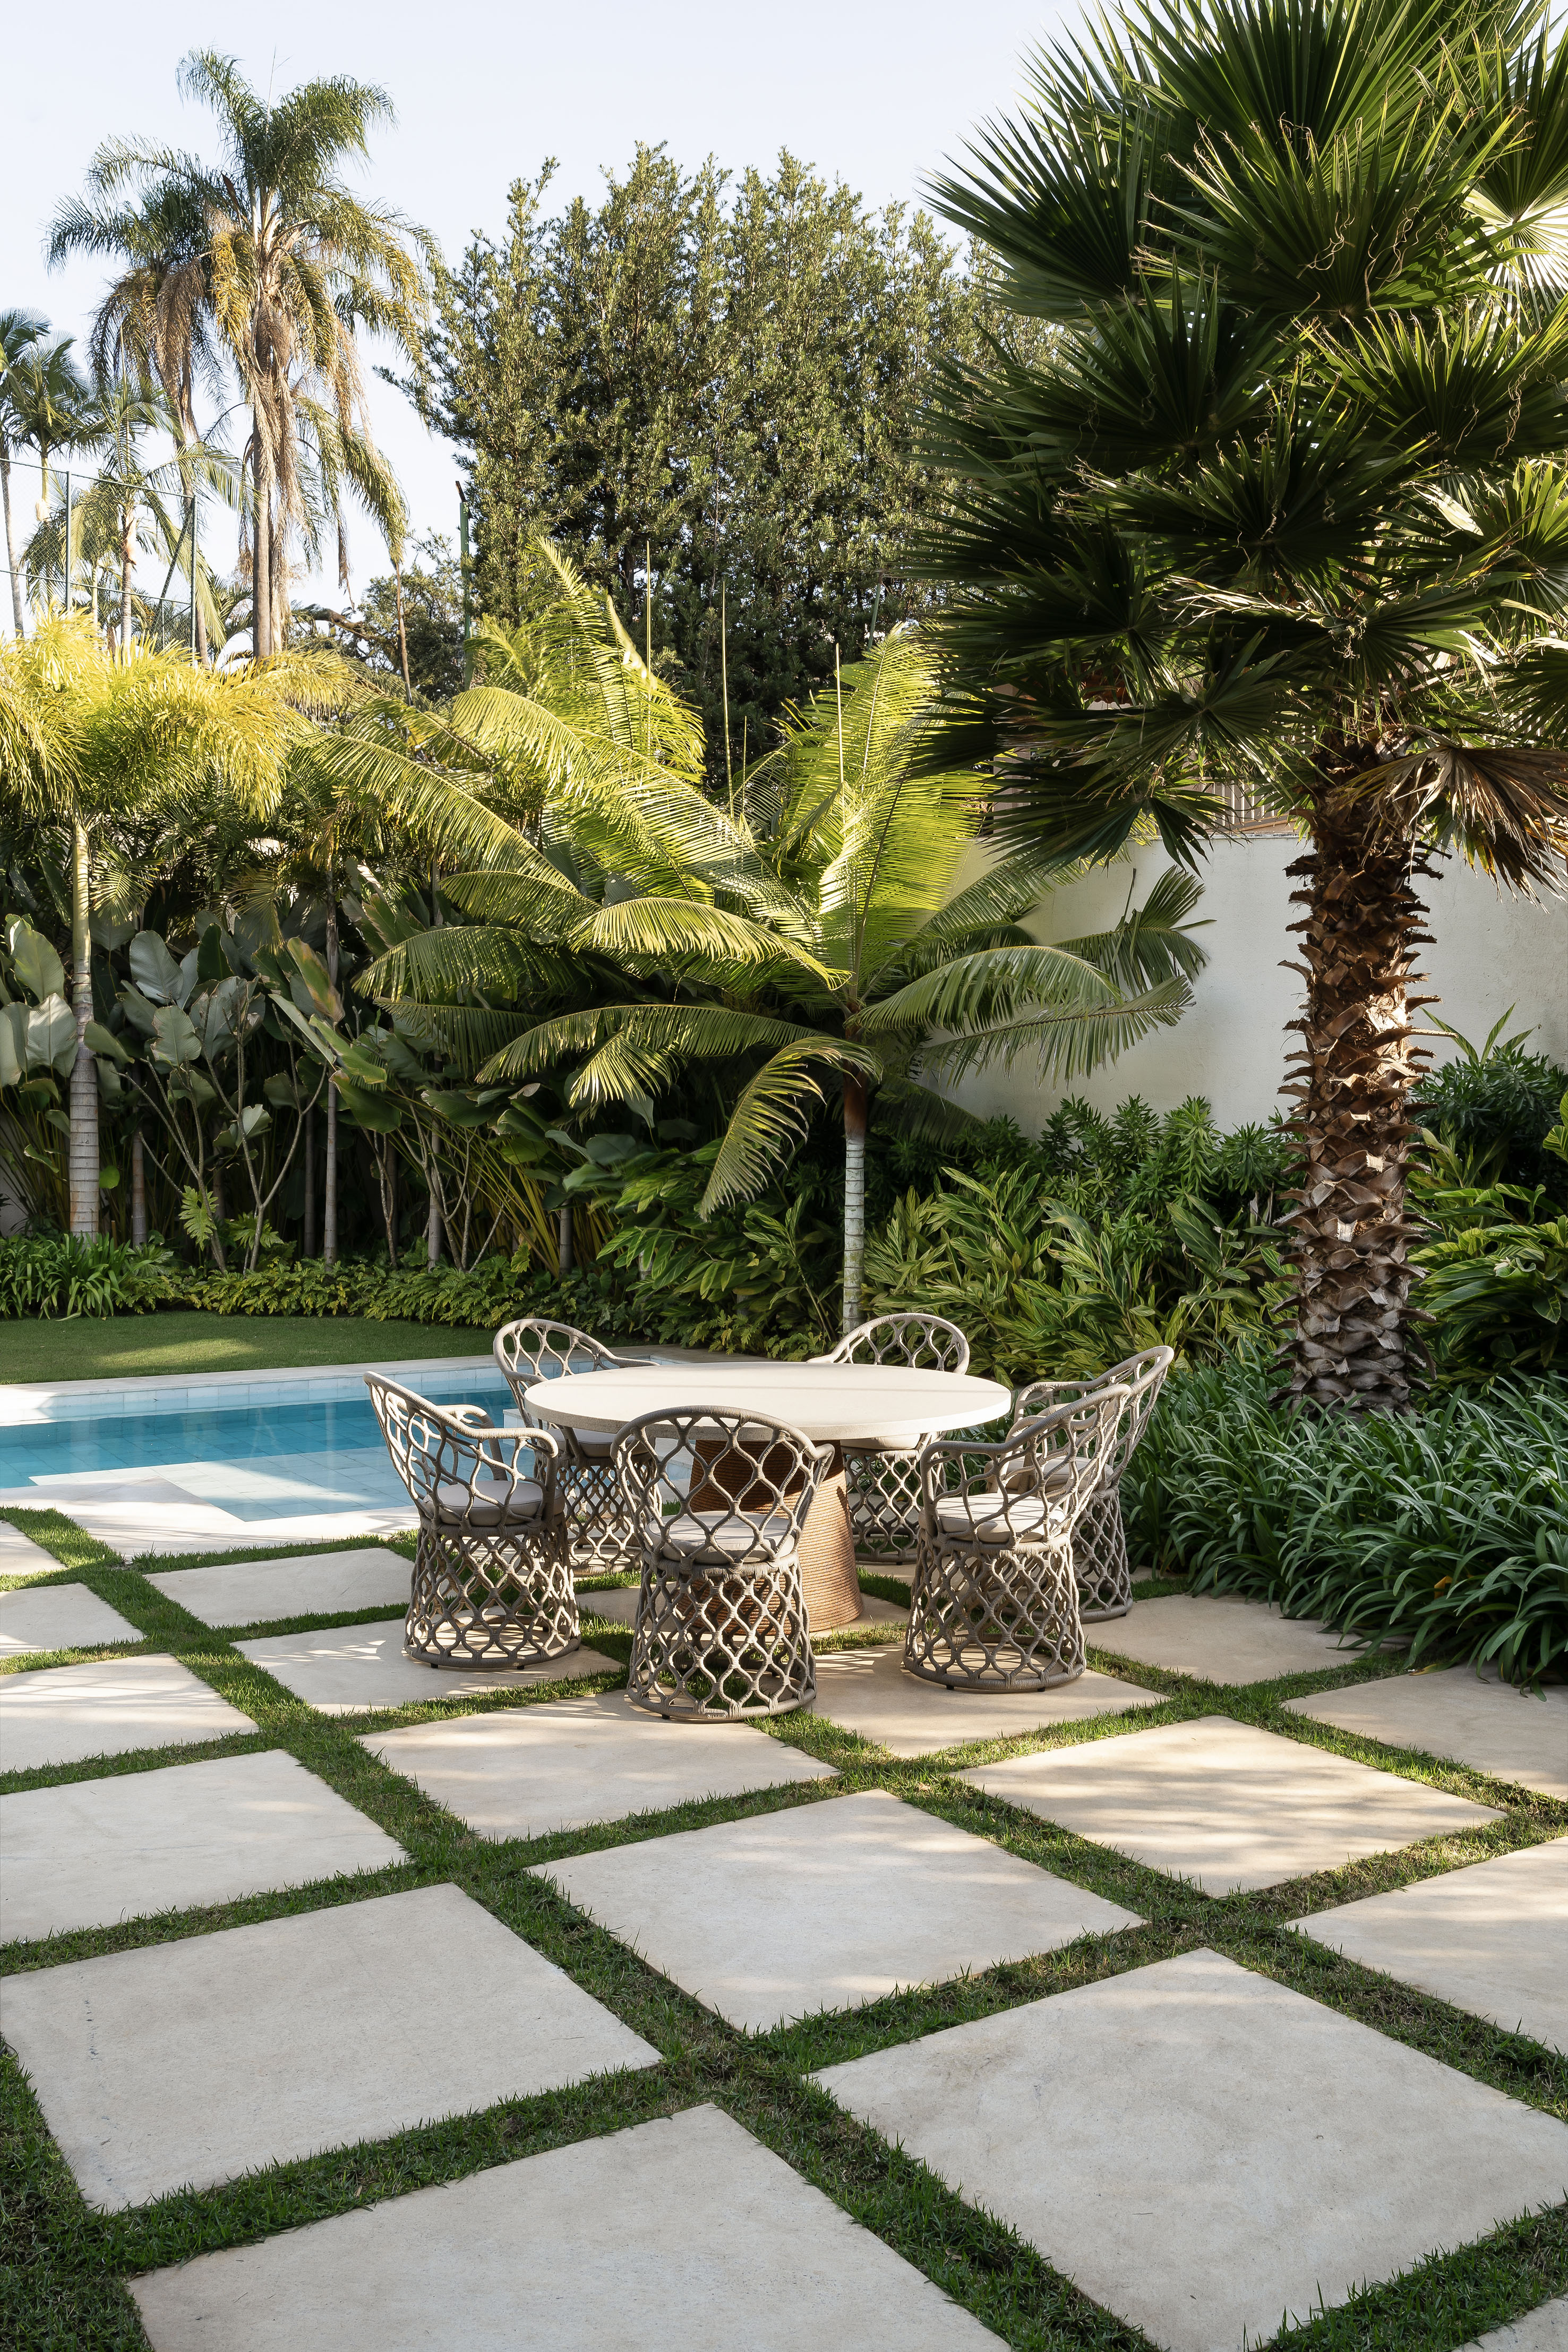 Casa integrada ao jardim e tem painel de azulejos de Alexandre Mancini. Projeto de Rogério da Fonseca. Na foto, jardim com palmeiras, folhagens e piscina.